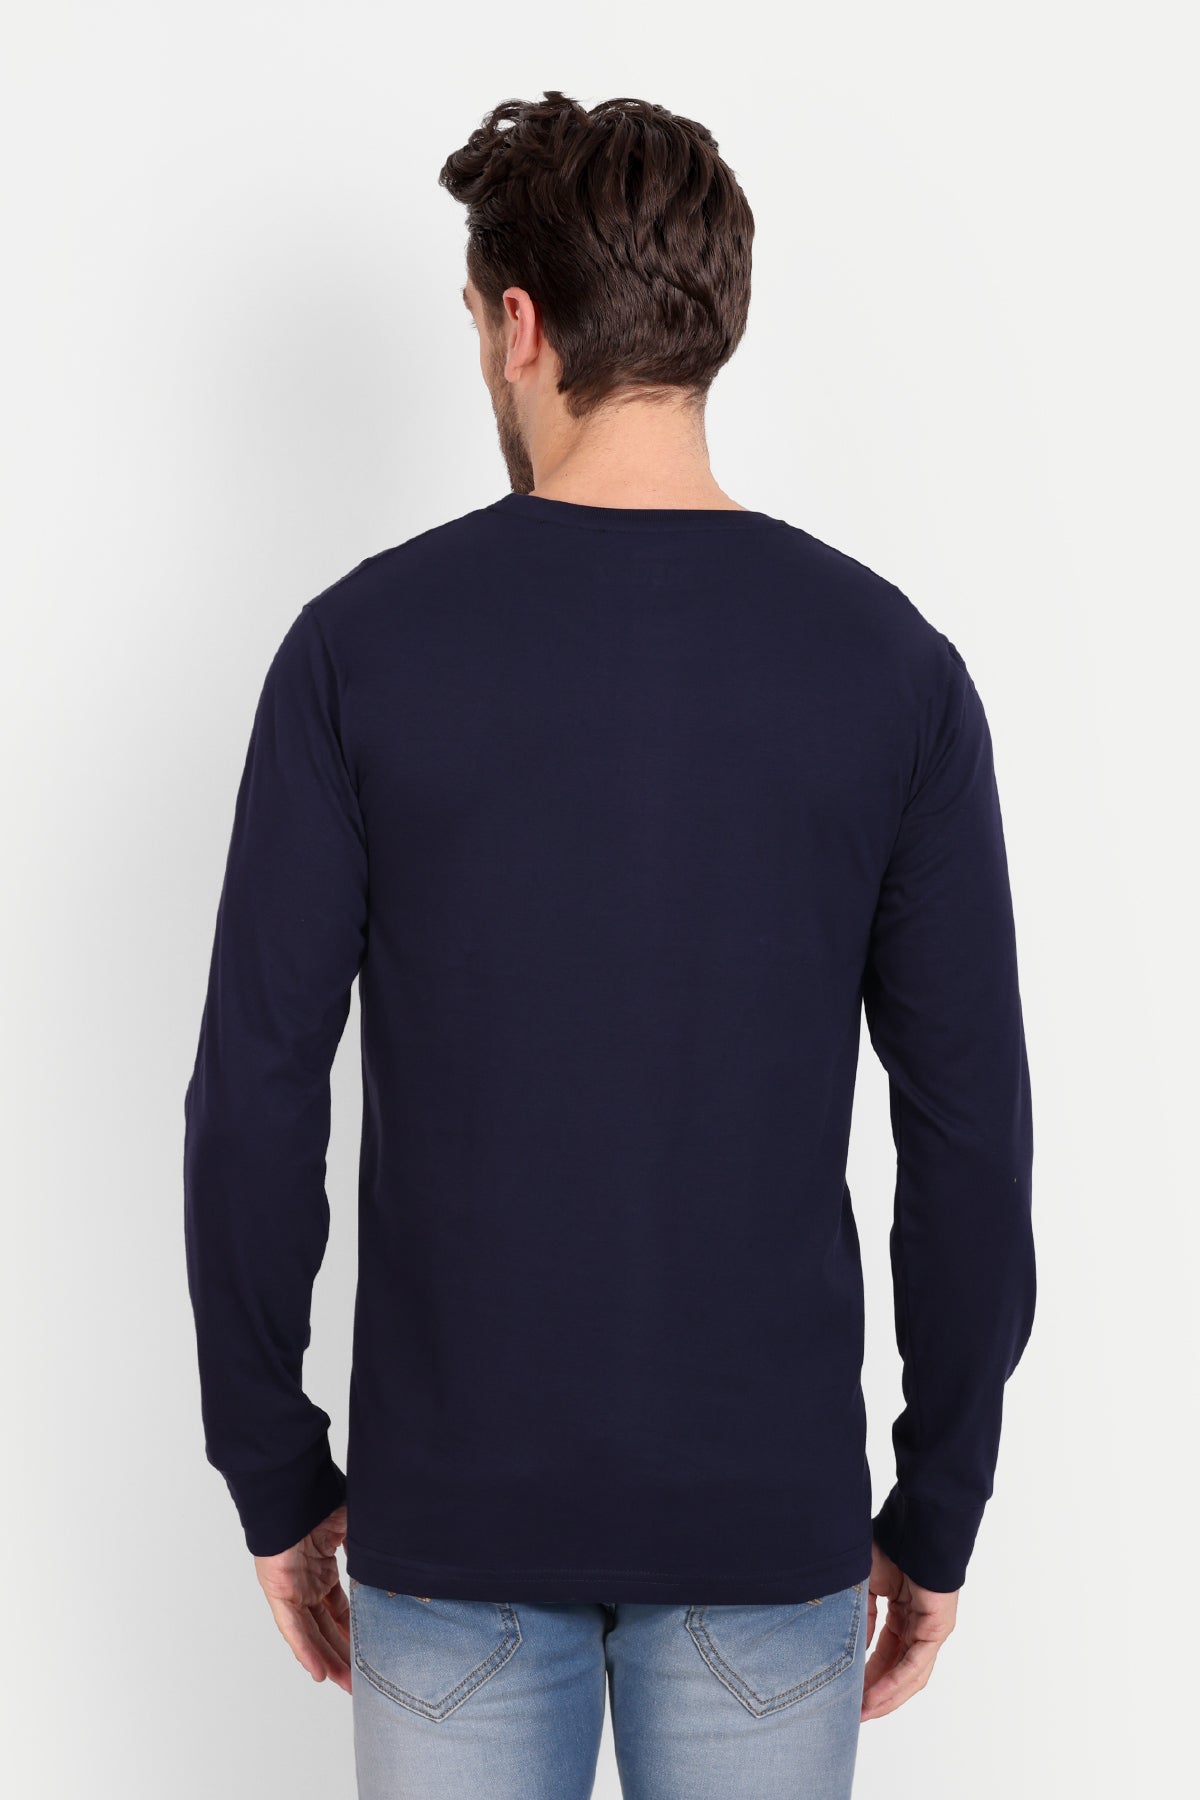 Men's Full Sleeve Navy Blue T-Shirt